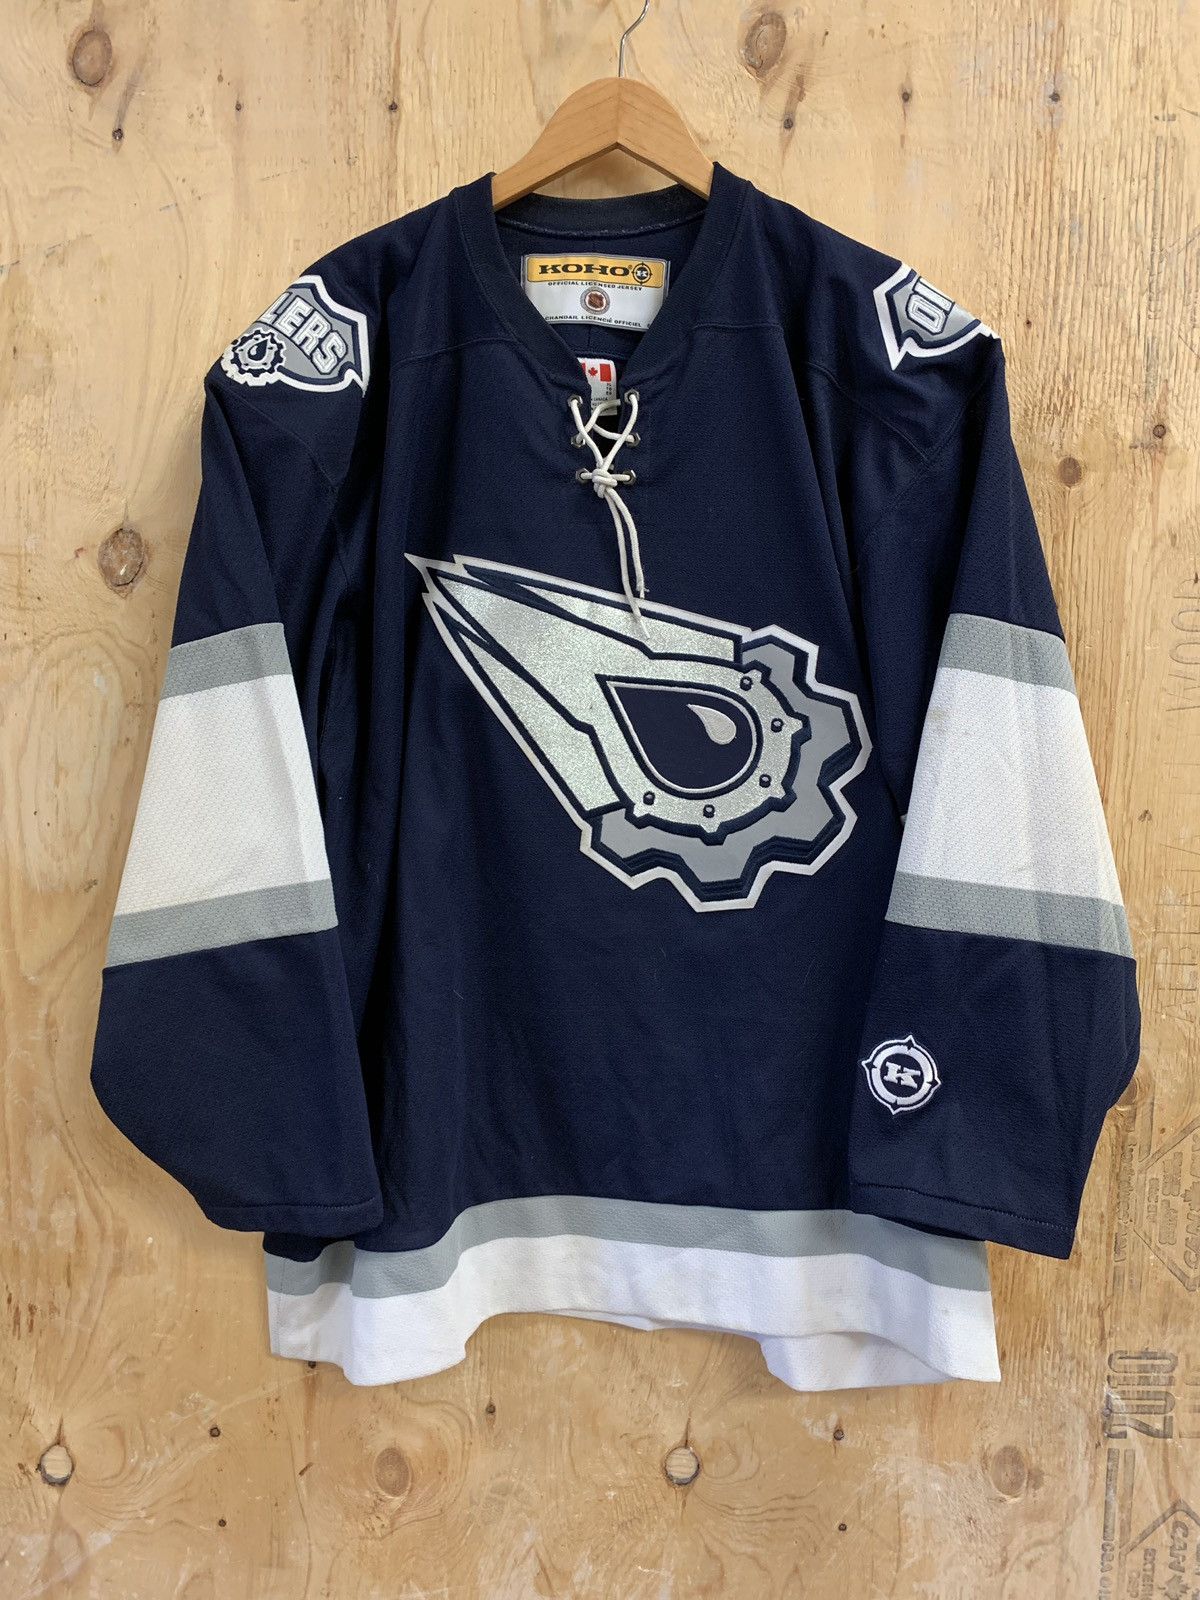 Oilers Oil Drop jersey for sale - Medium KOHO : r/hockeyjerseys